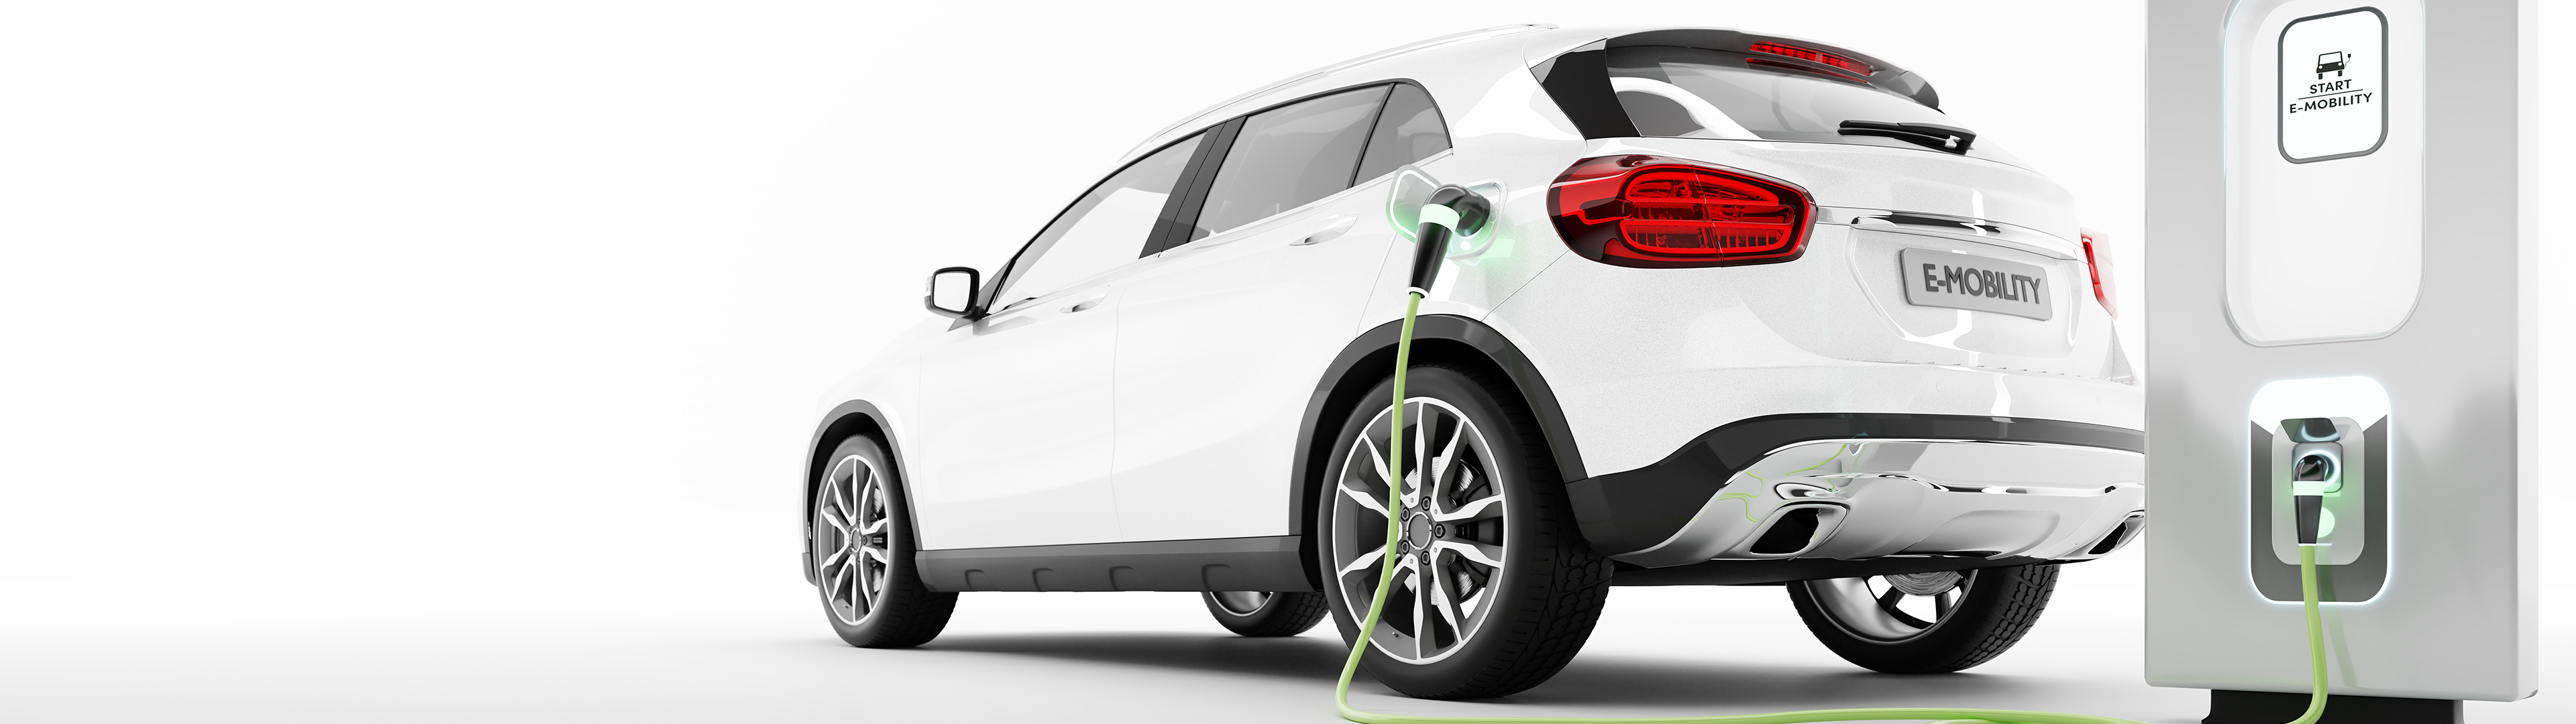 Energieeinsparung entspricht über 18 Mio km Fahrt mit einem Elektroauto